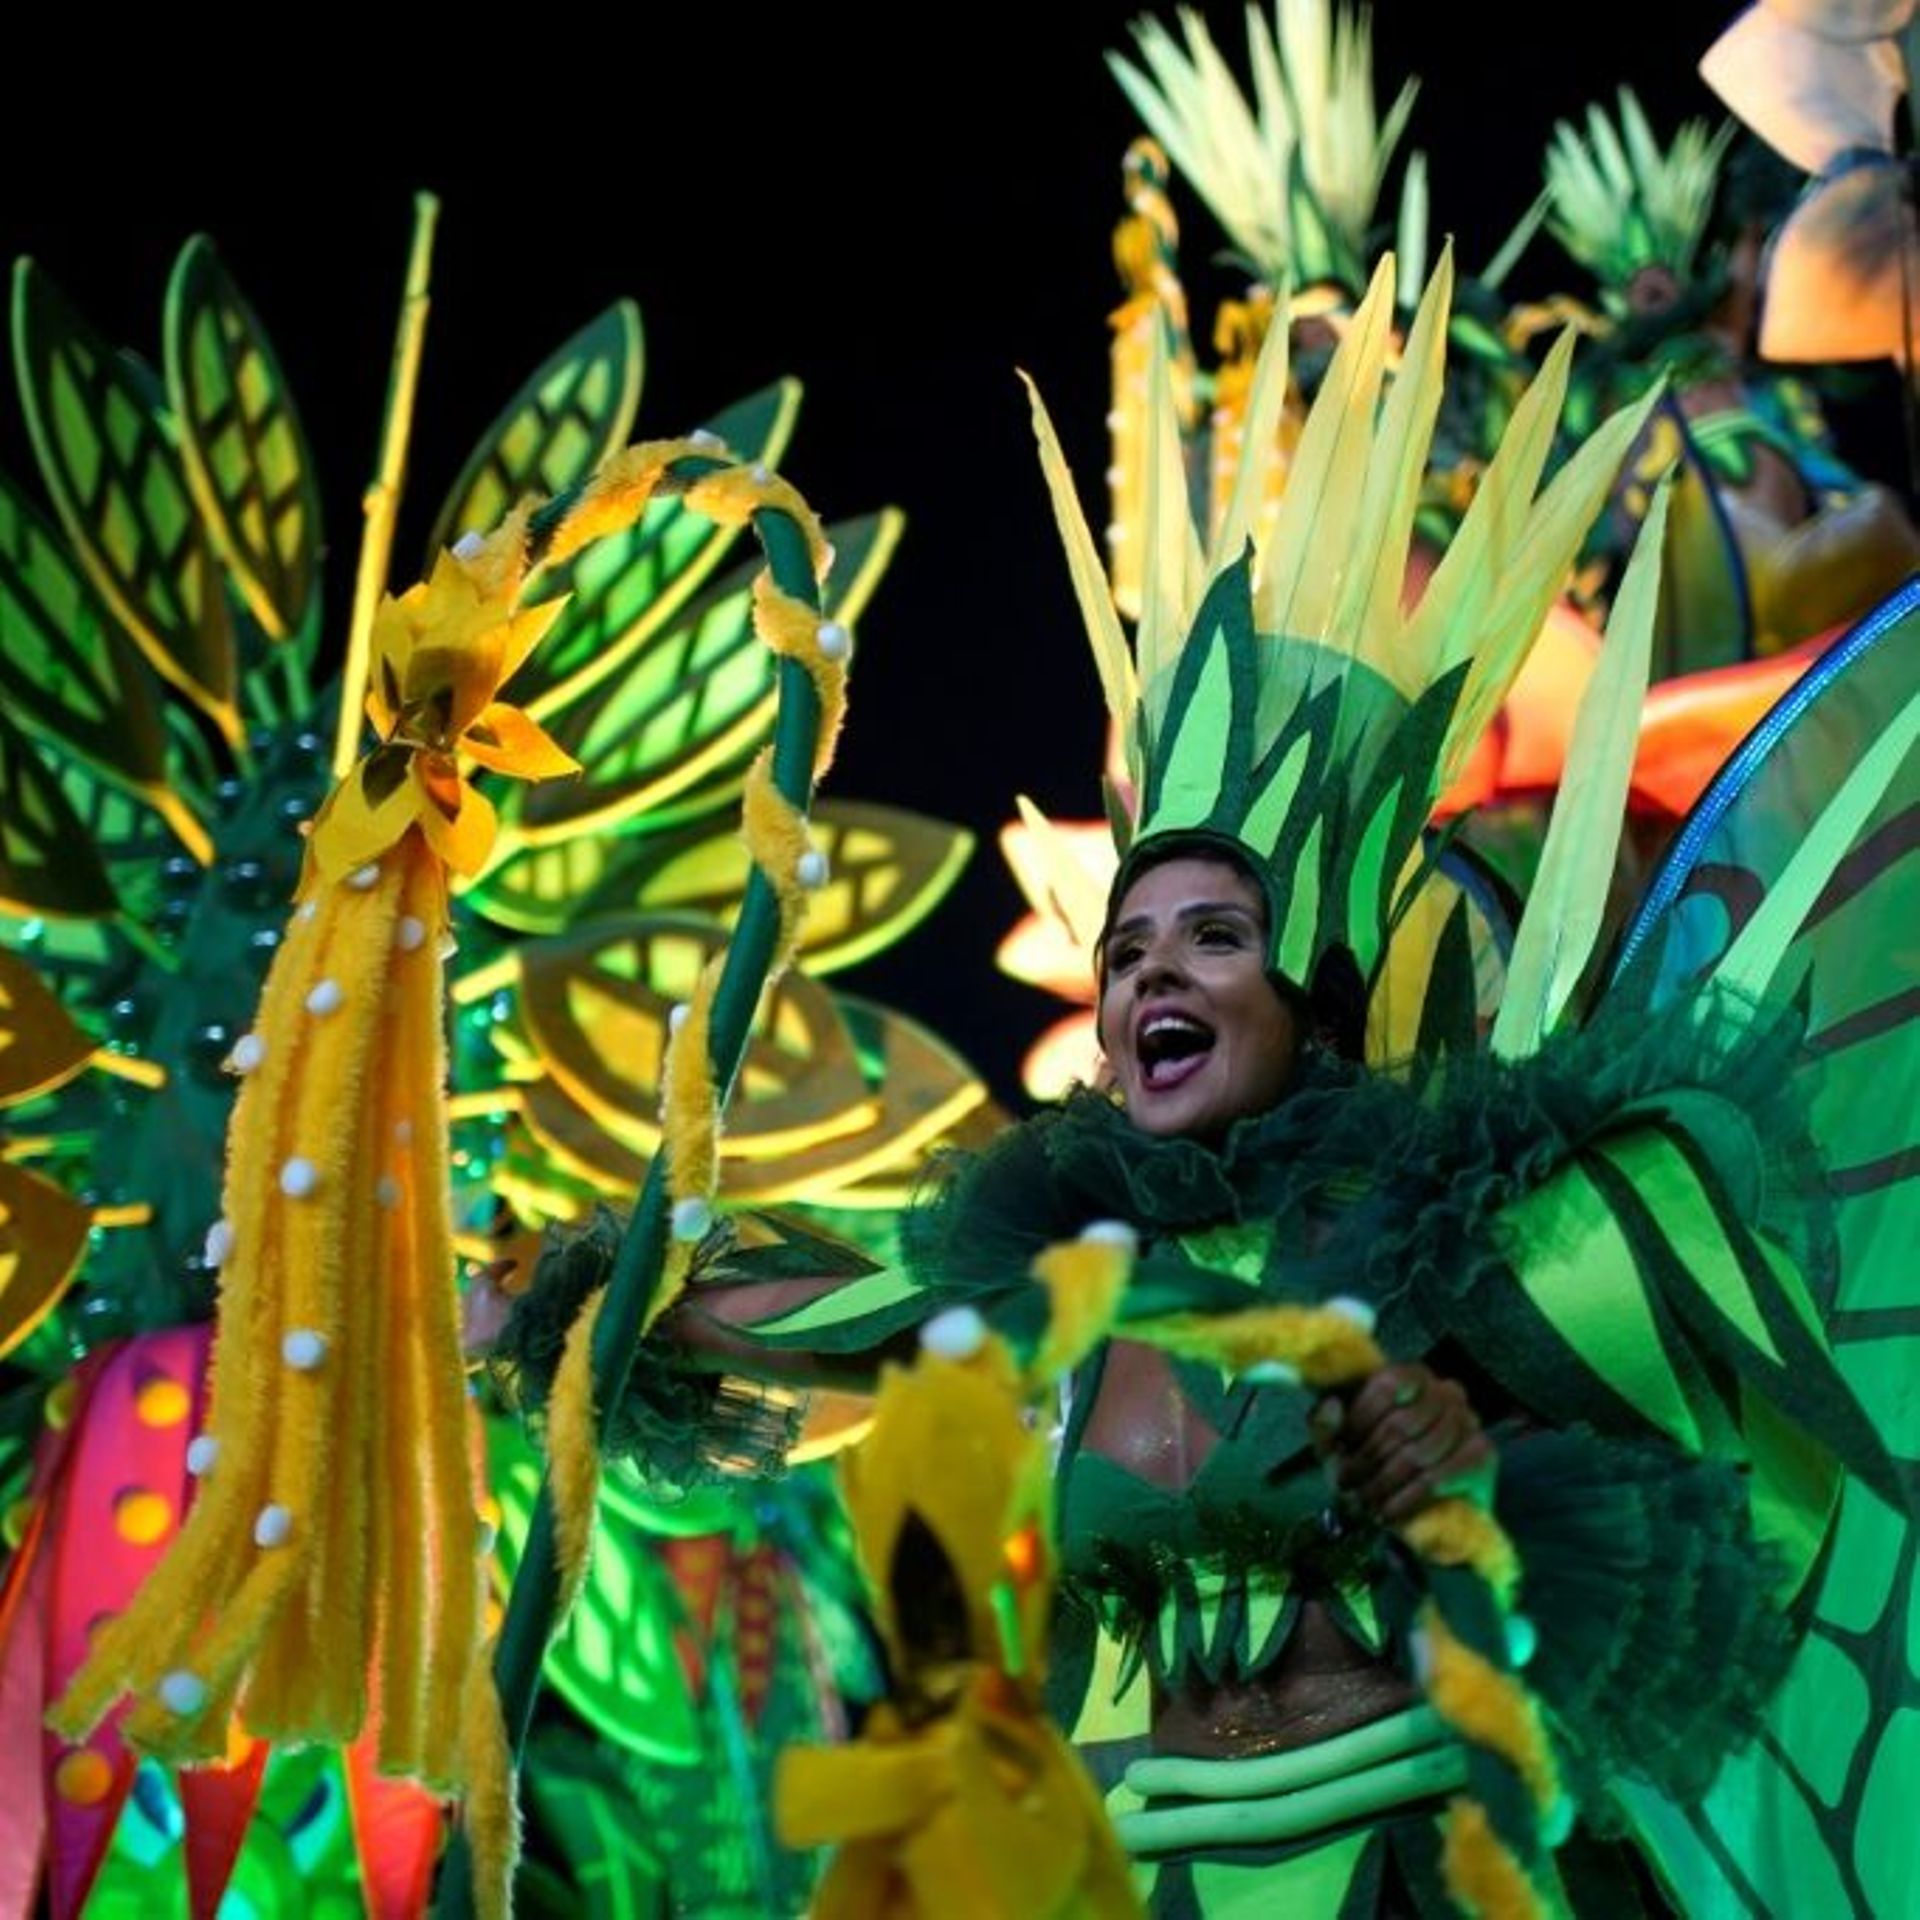 Première nuit de carnaval à Rio après deux ans de crise sanitaire